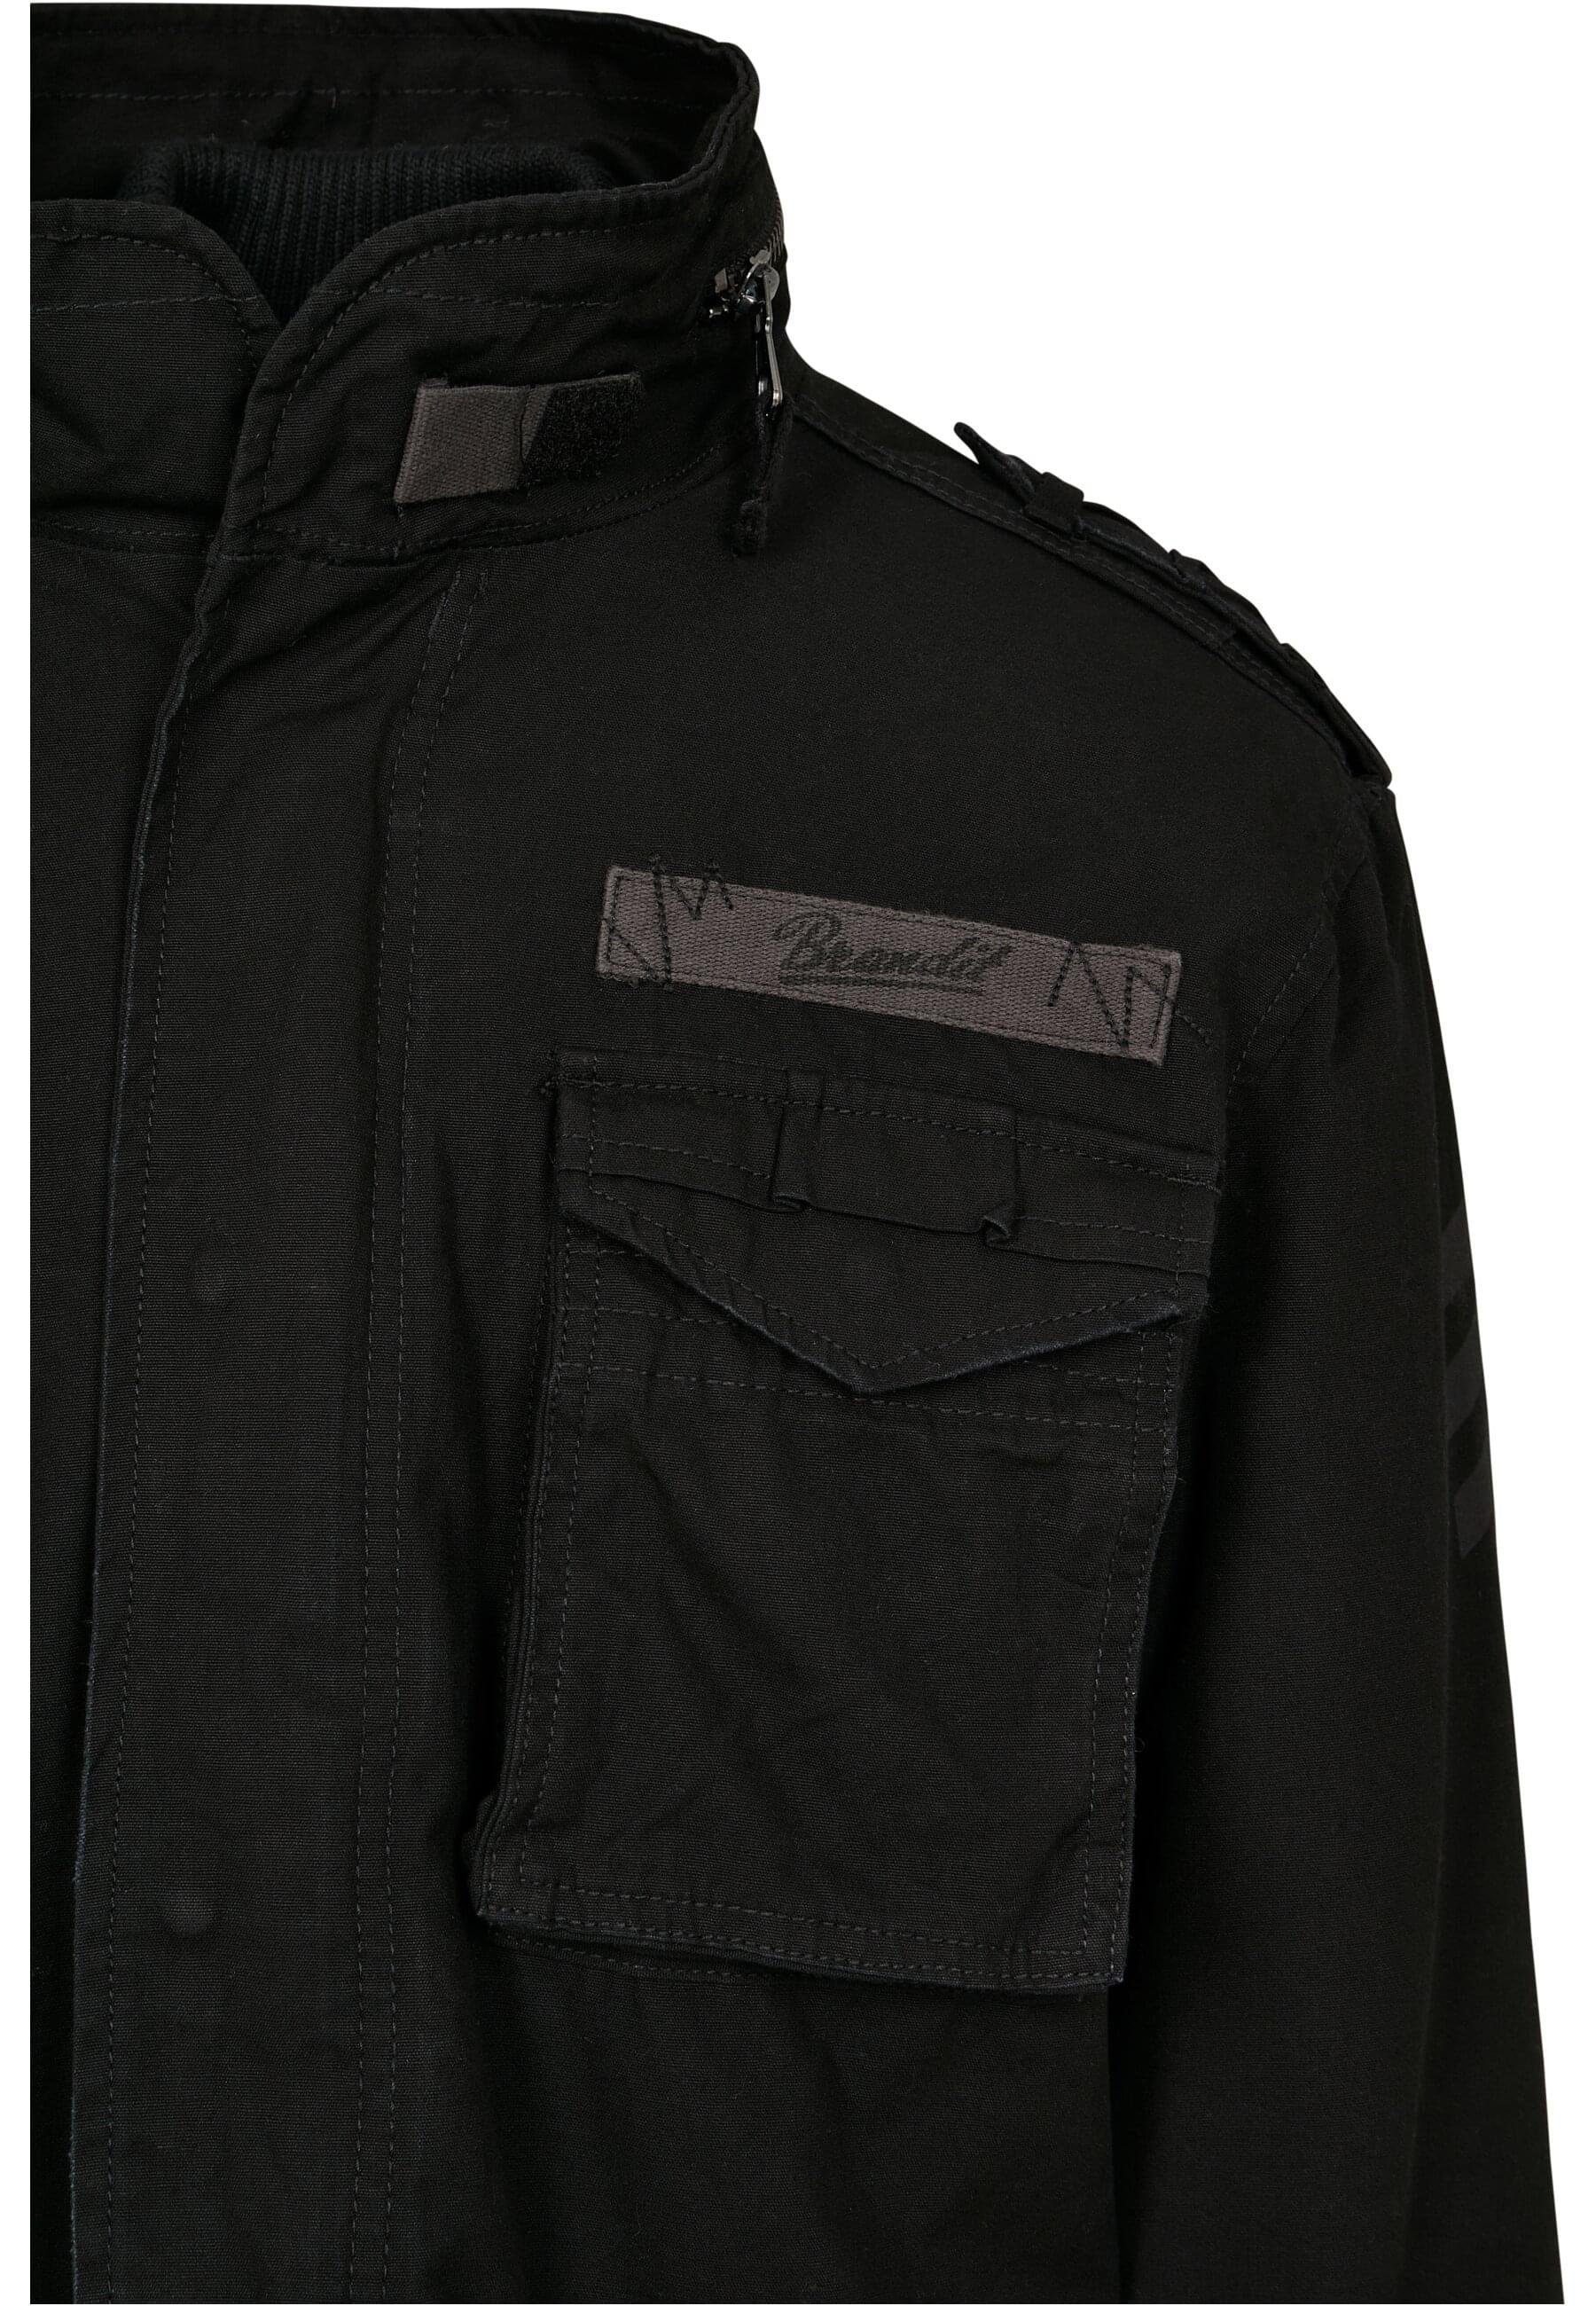 Giant black M-65 Jacket Herren Brandit Wintermantel